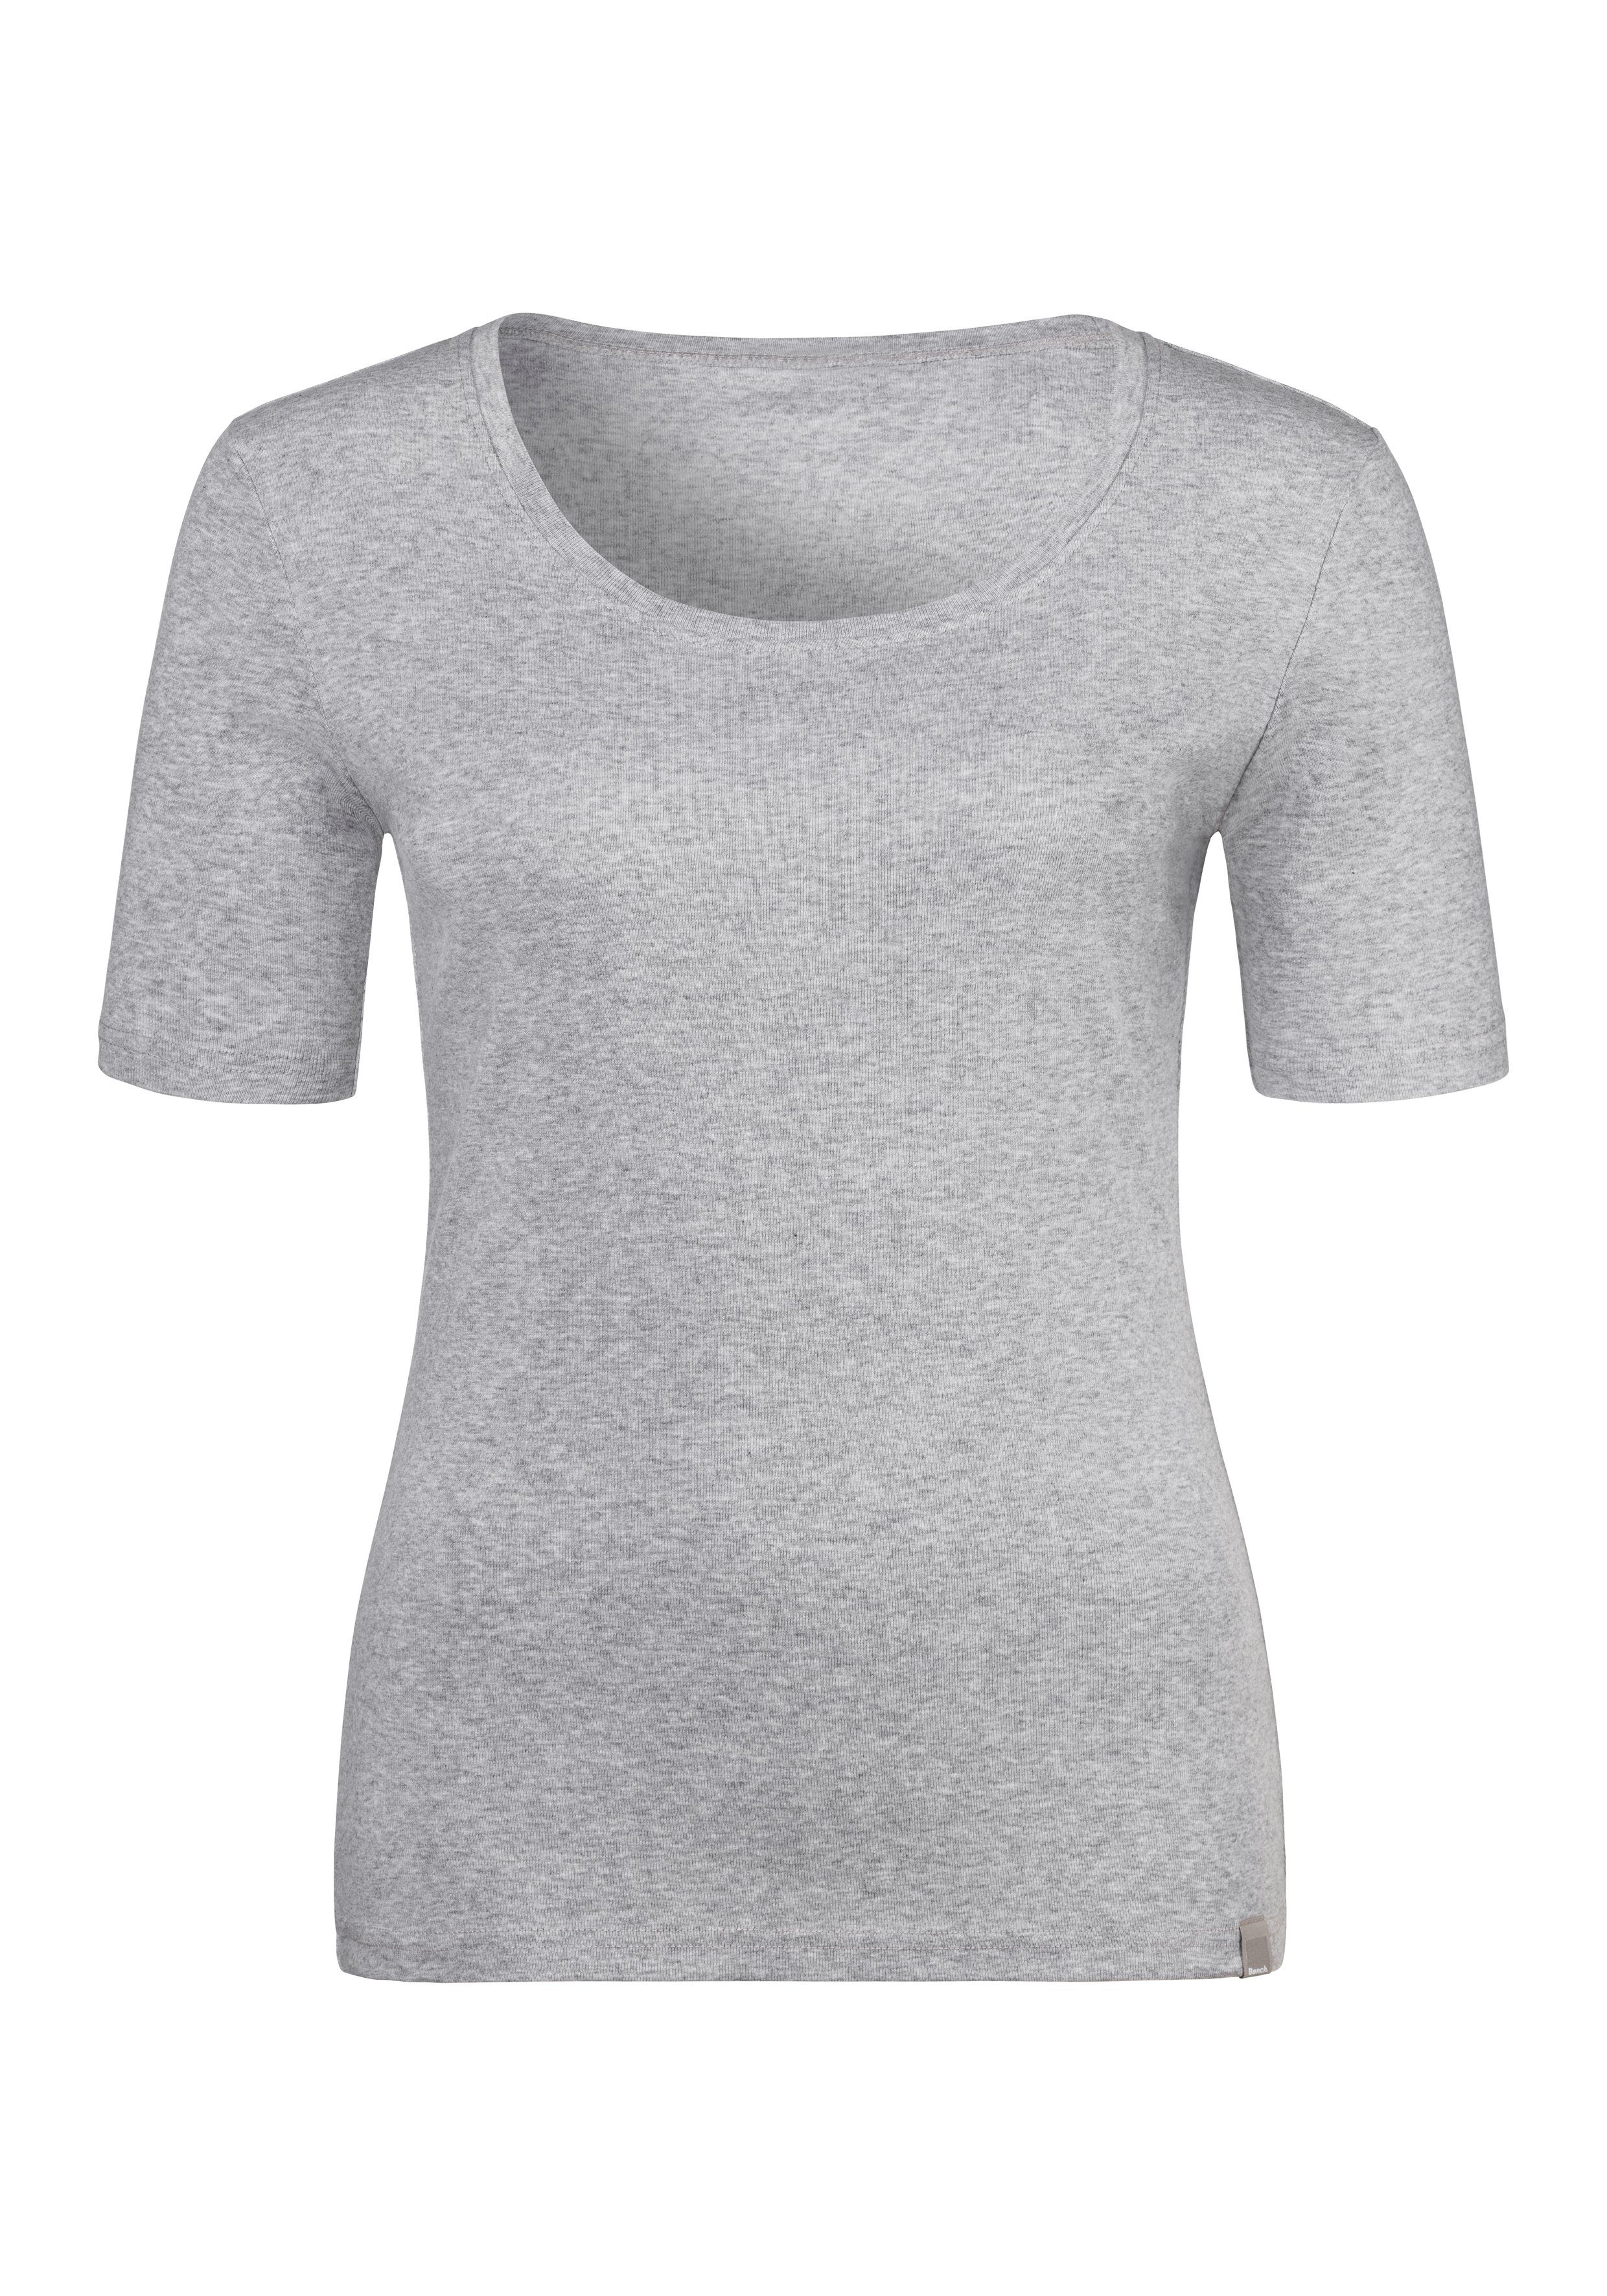 Bench. T-Shirt (2er-Pack) aus schwarz, grau-meliert Unterziehshirt Feinripp-Qualität, weicher